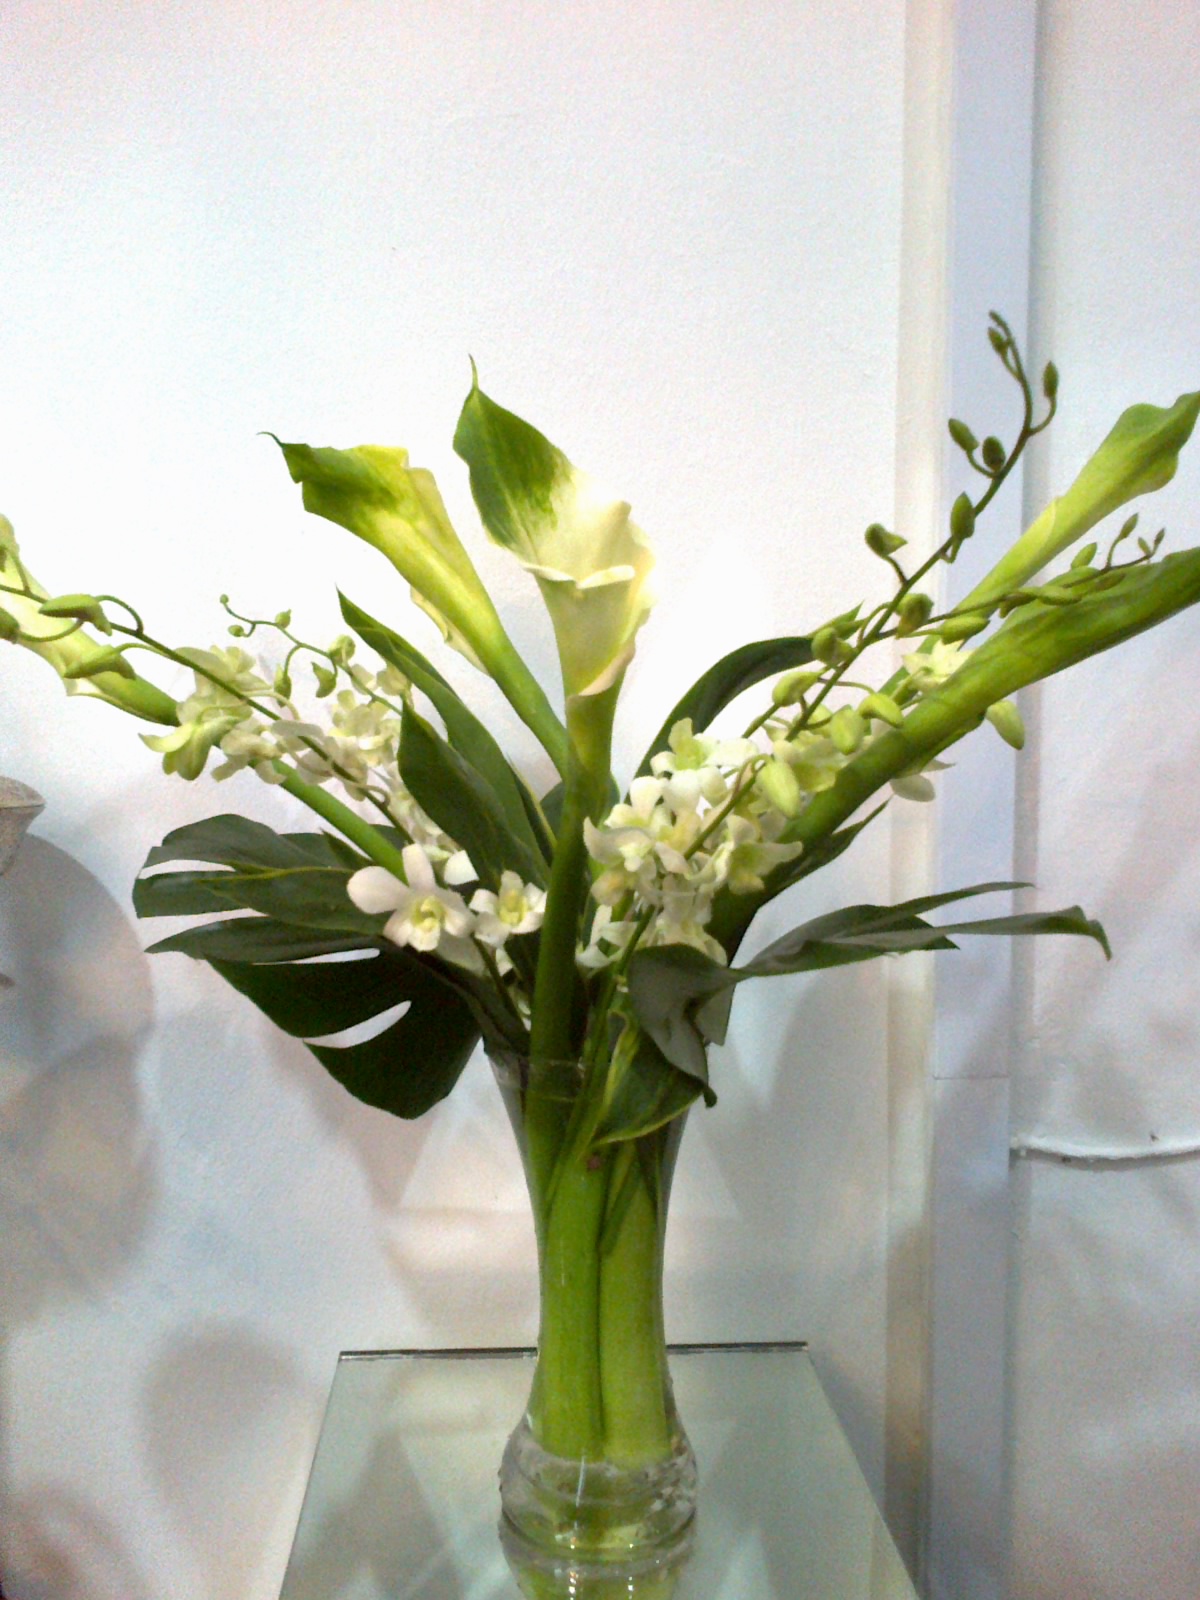 THE PERSADA - Laman Rasmi Gubahan Bunga: Gubahan Bunga Segar - Modern Style